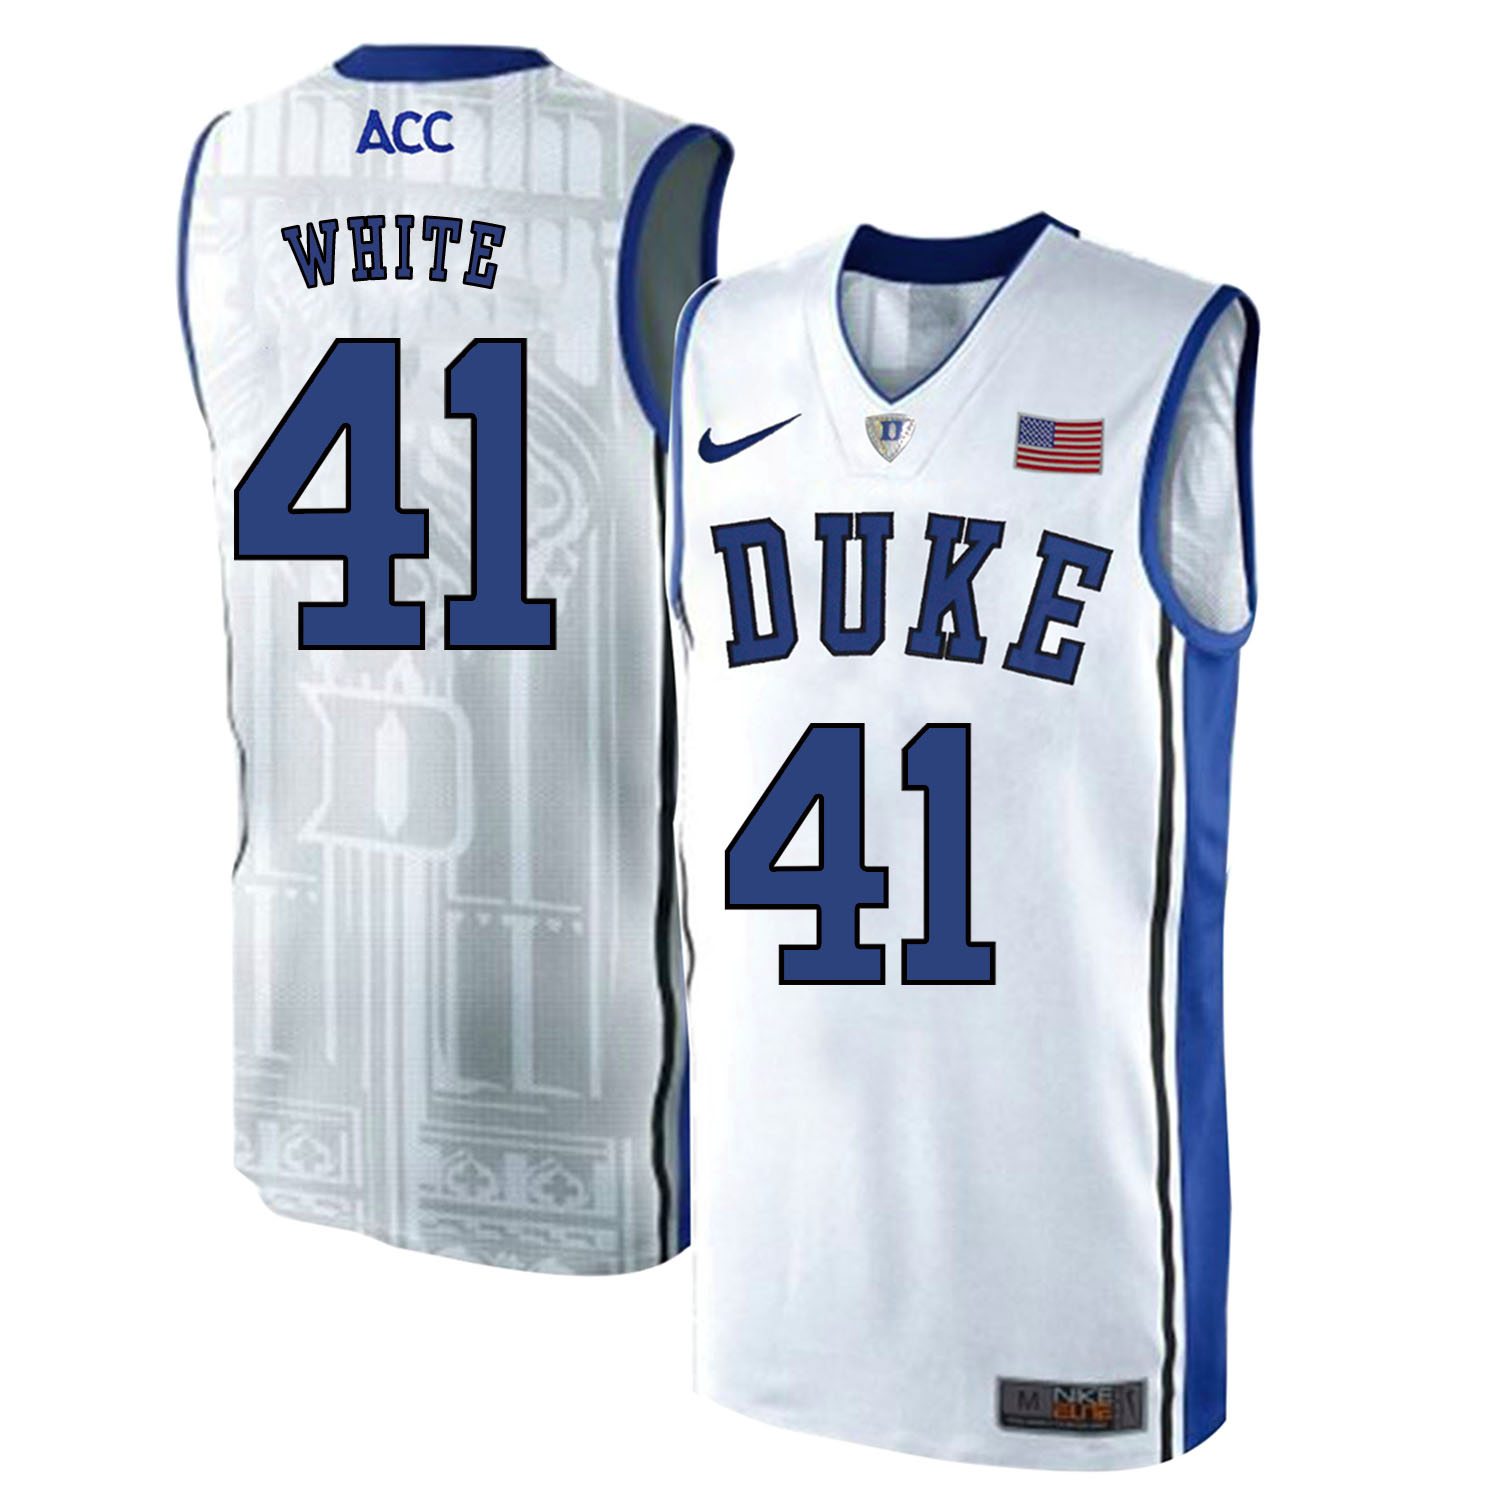 Duke Blue Devils 41 Jack White White Elite Nike College Basketball Jersey